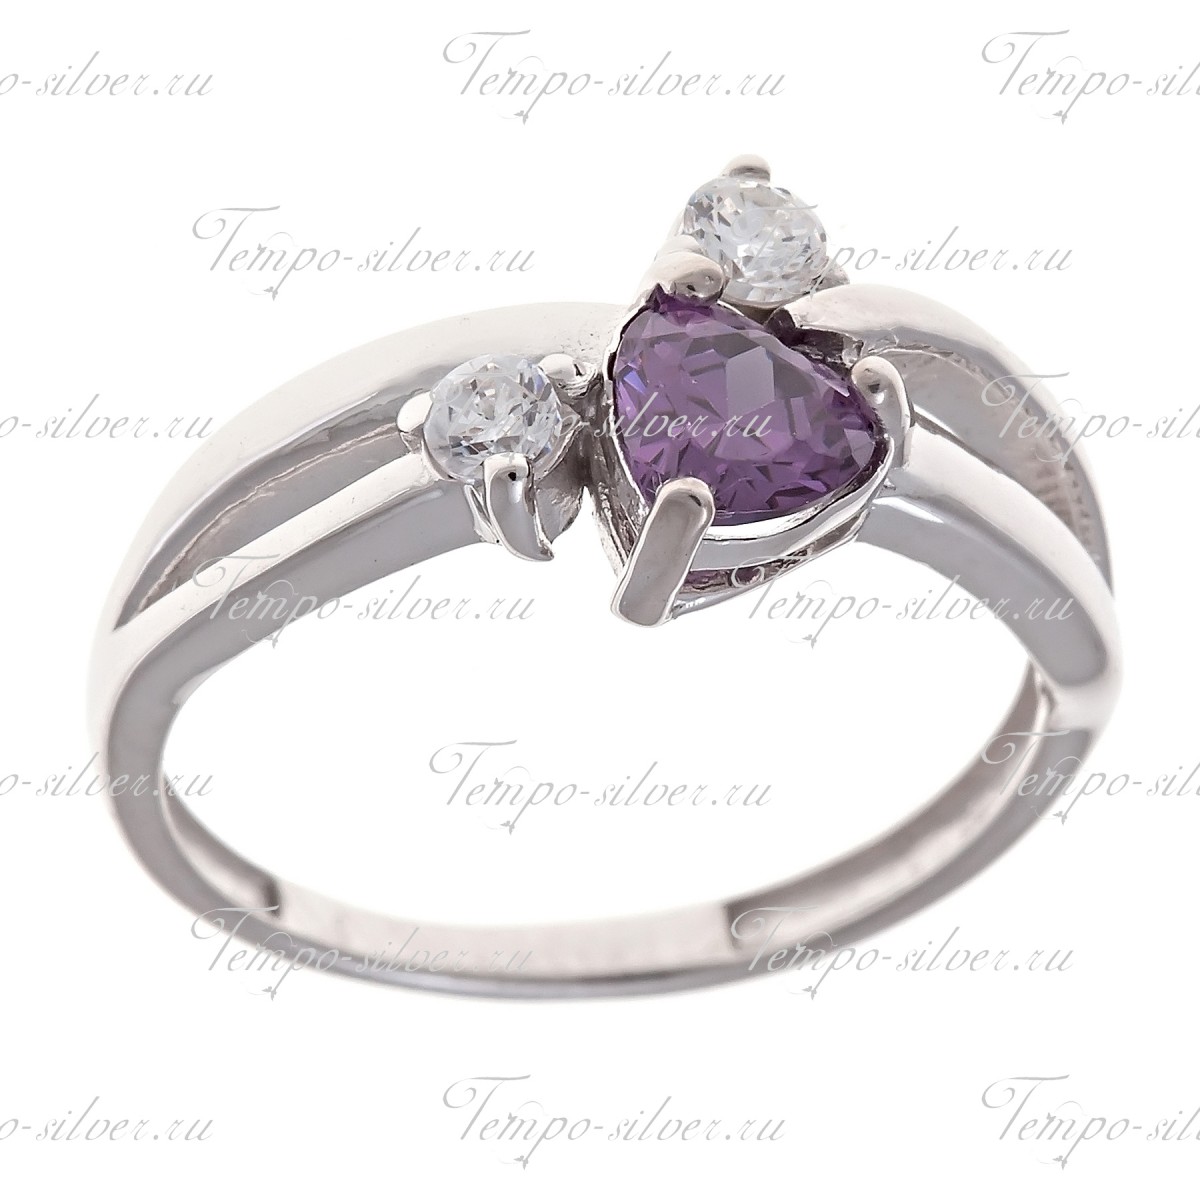 Кольцо из серебра с фиолетовым сердцевидным камнем на раздвоенной шинке цена